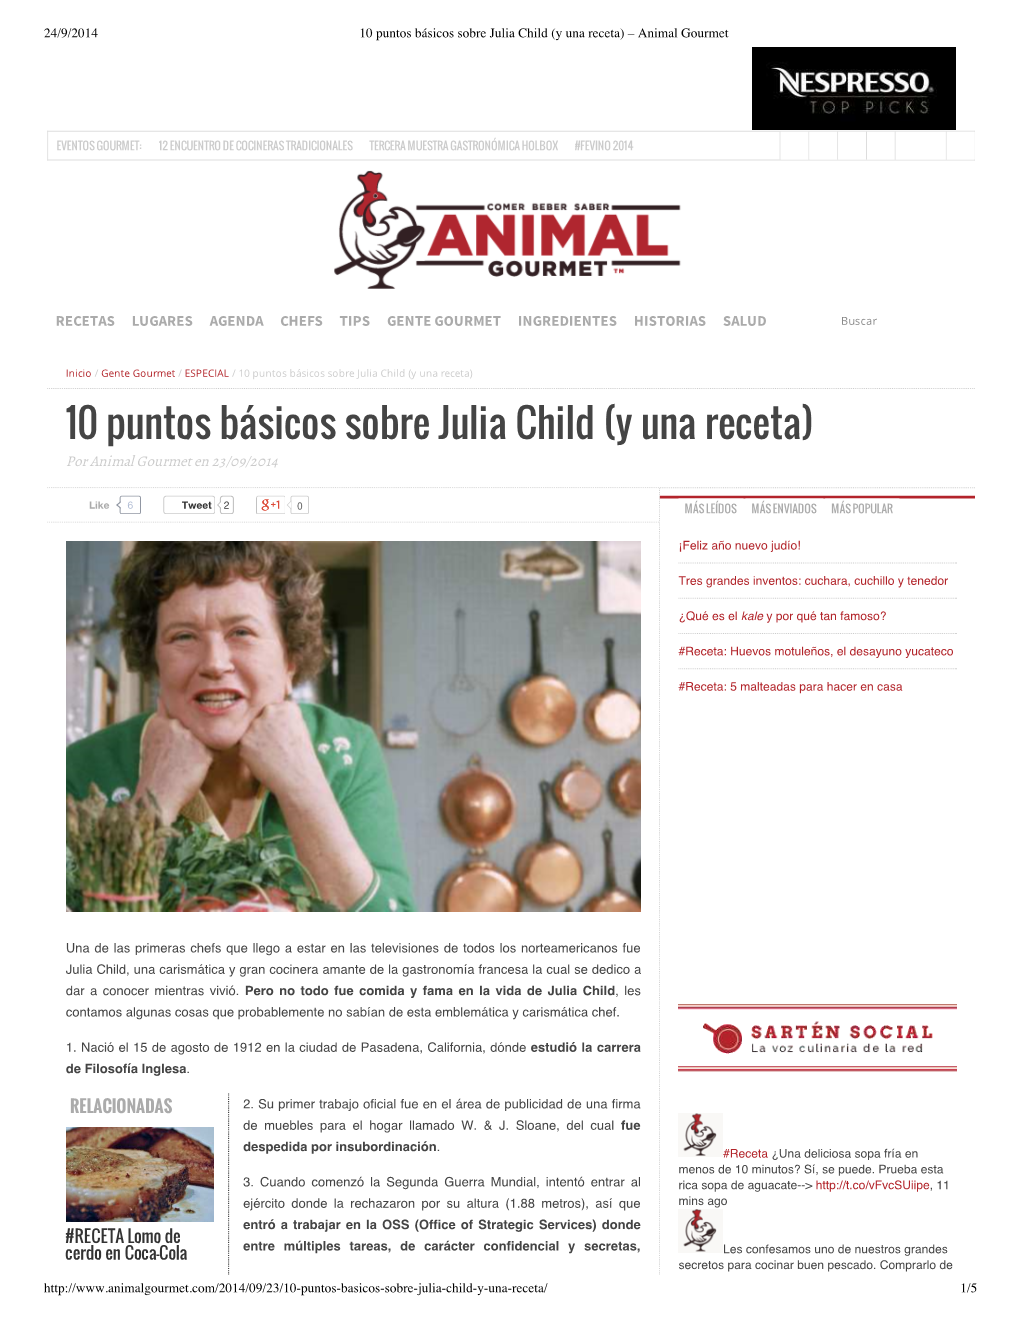 10 Puntos Básicos Sobre Julia Child (Y Una Receta) – Animal Gourmet